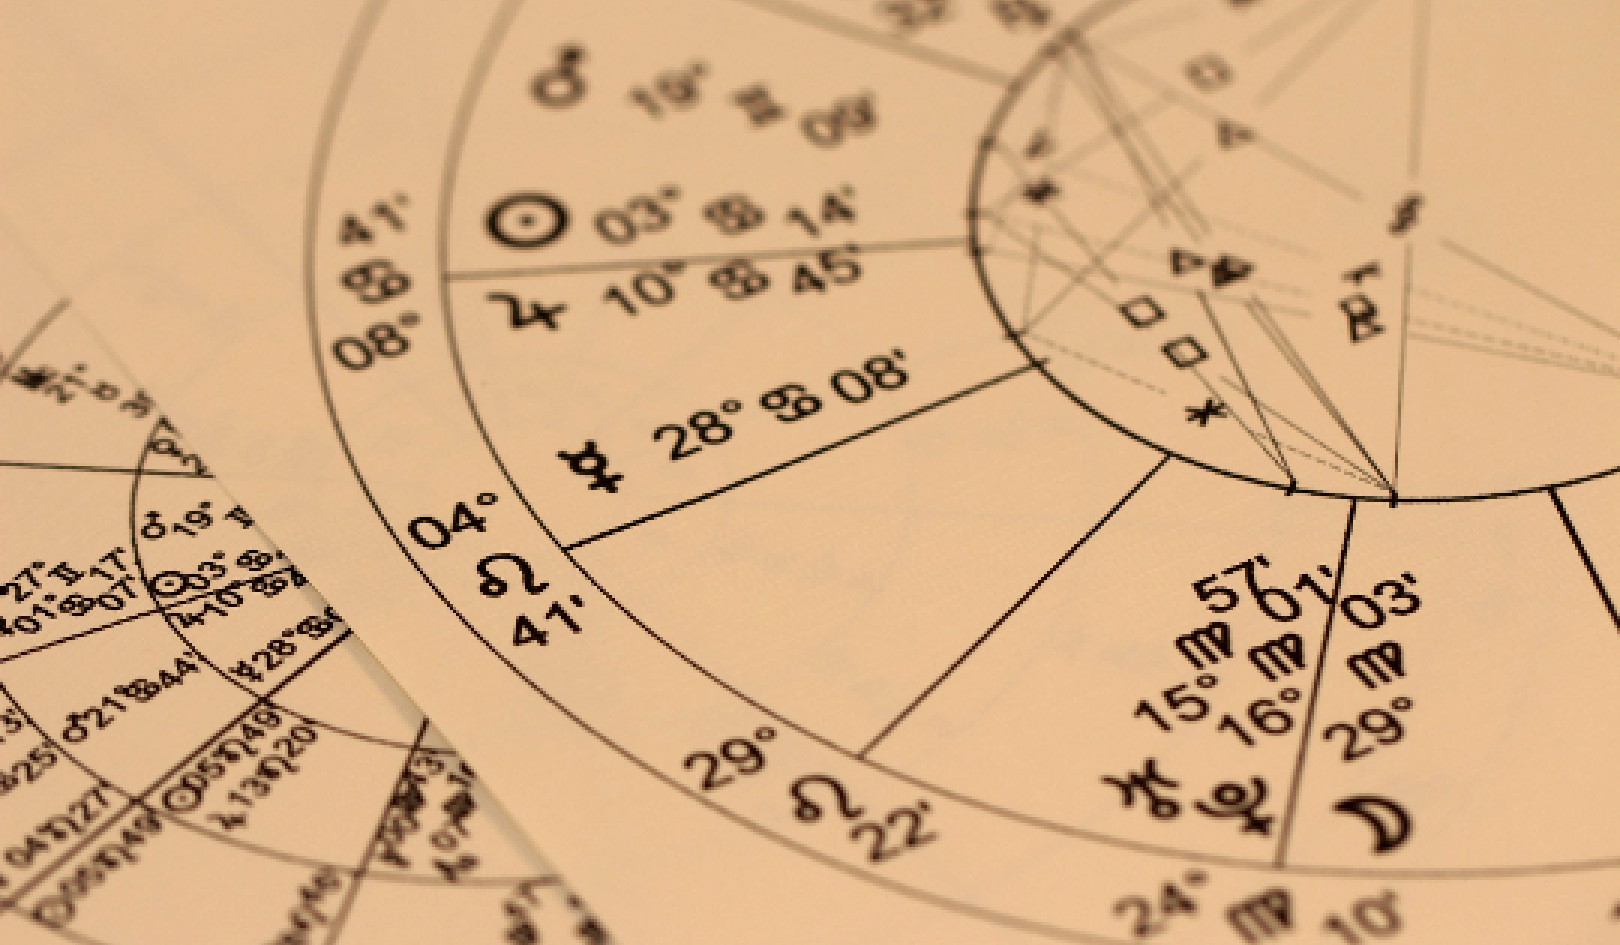 Tudomány és asztrológia: otthoni kísérletek